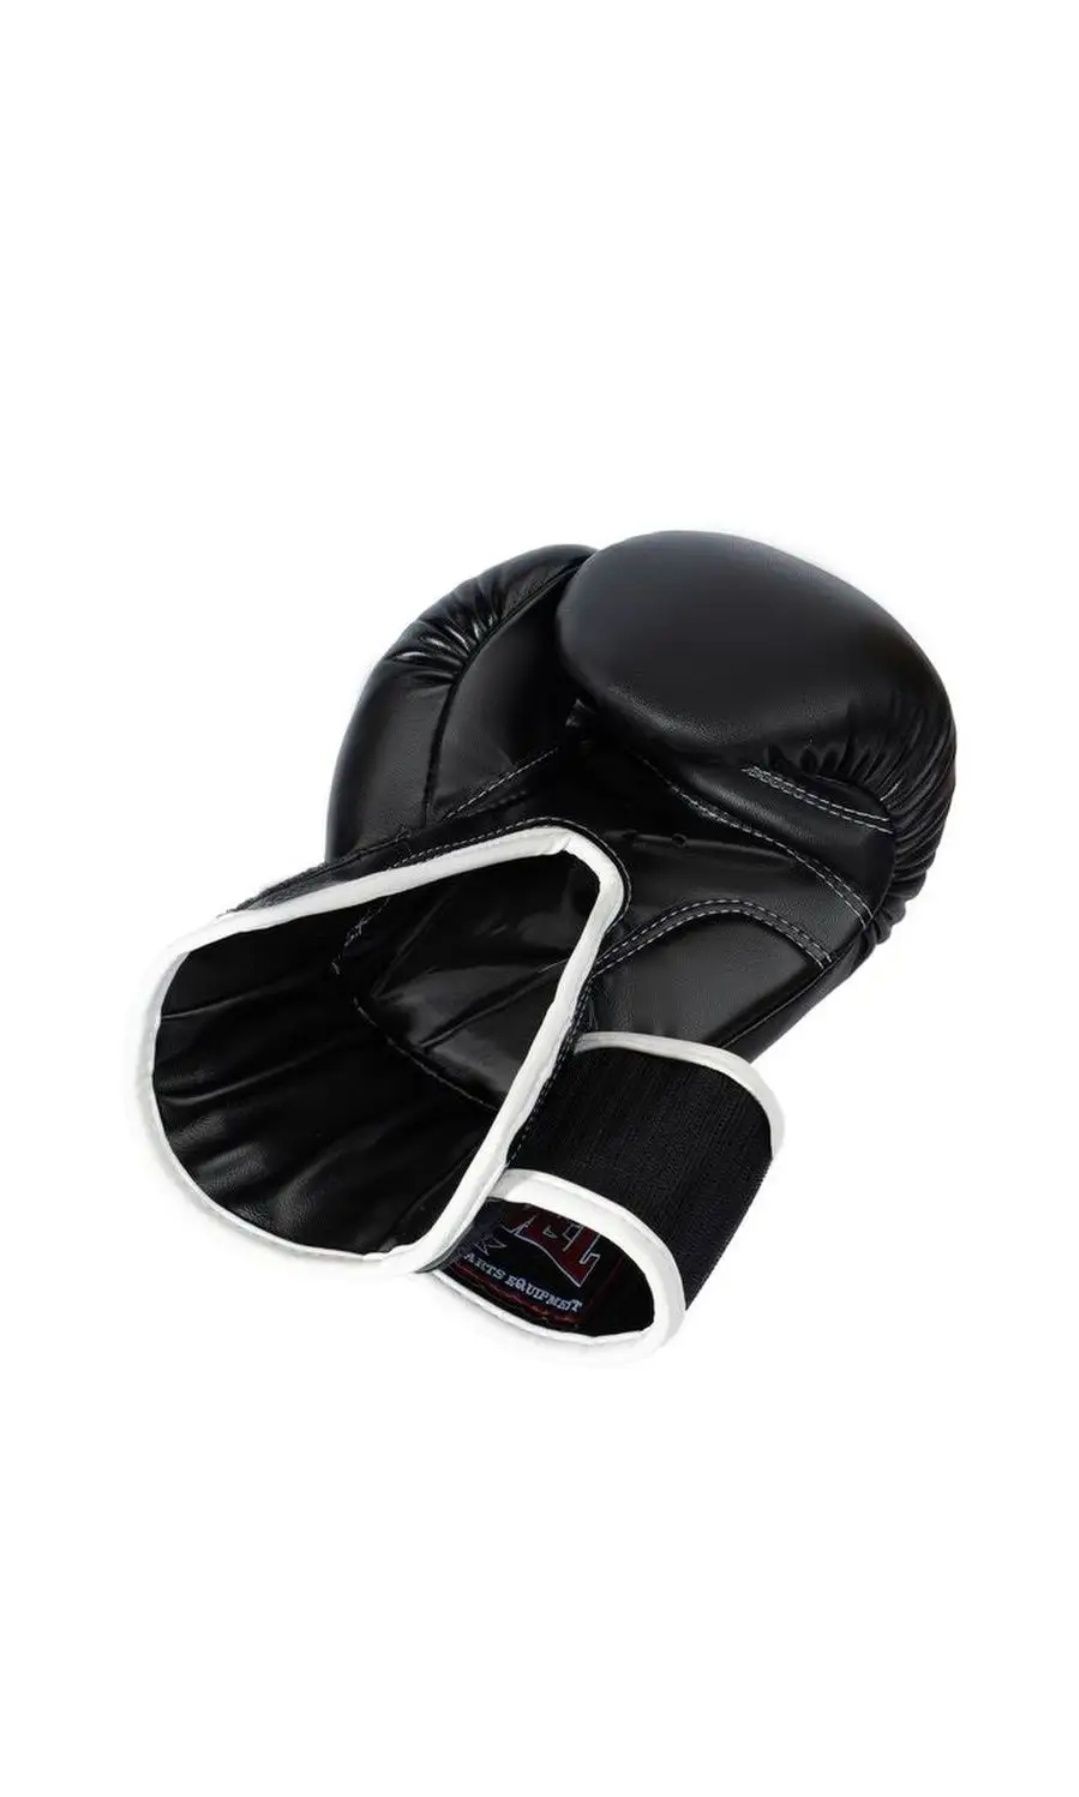 Боксерские перчатки, Перчатки для Кикбоксинга, Муай тай, ММА.